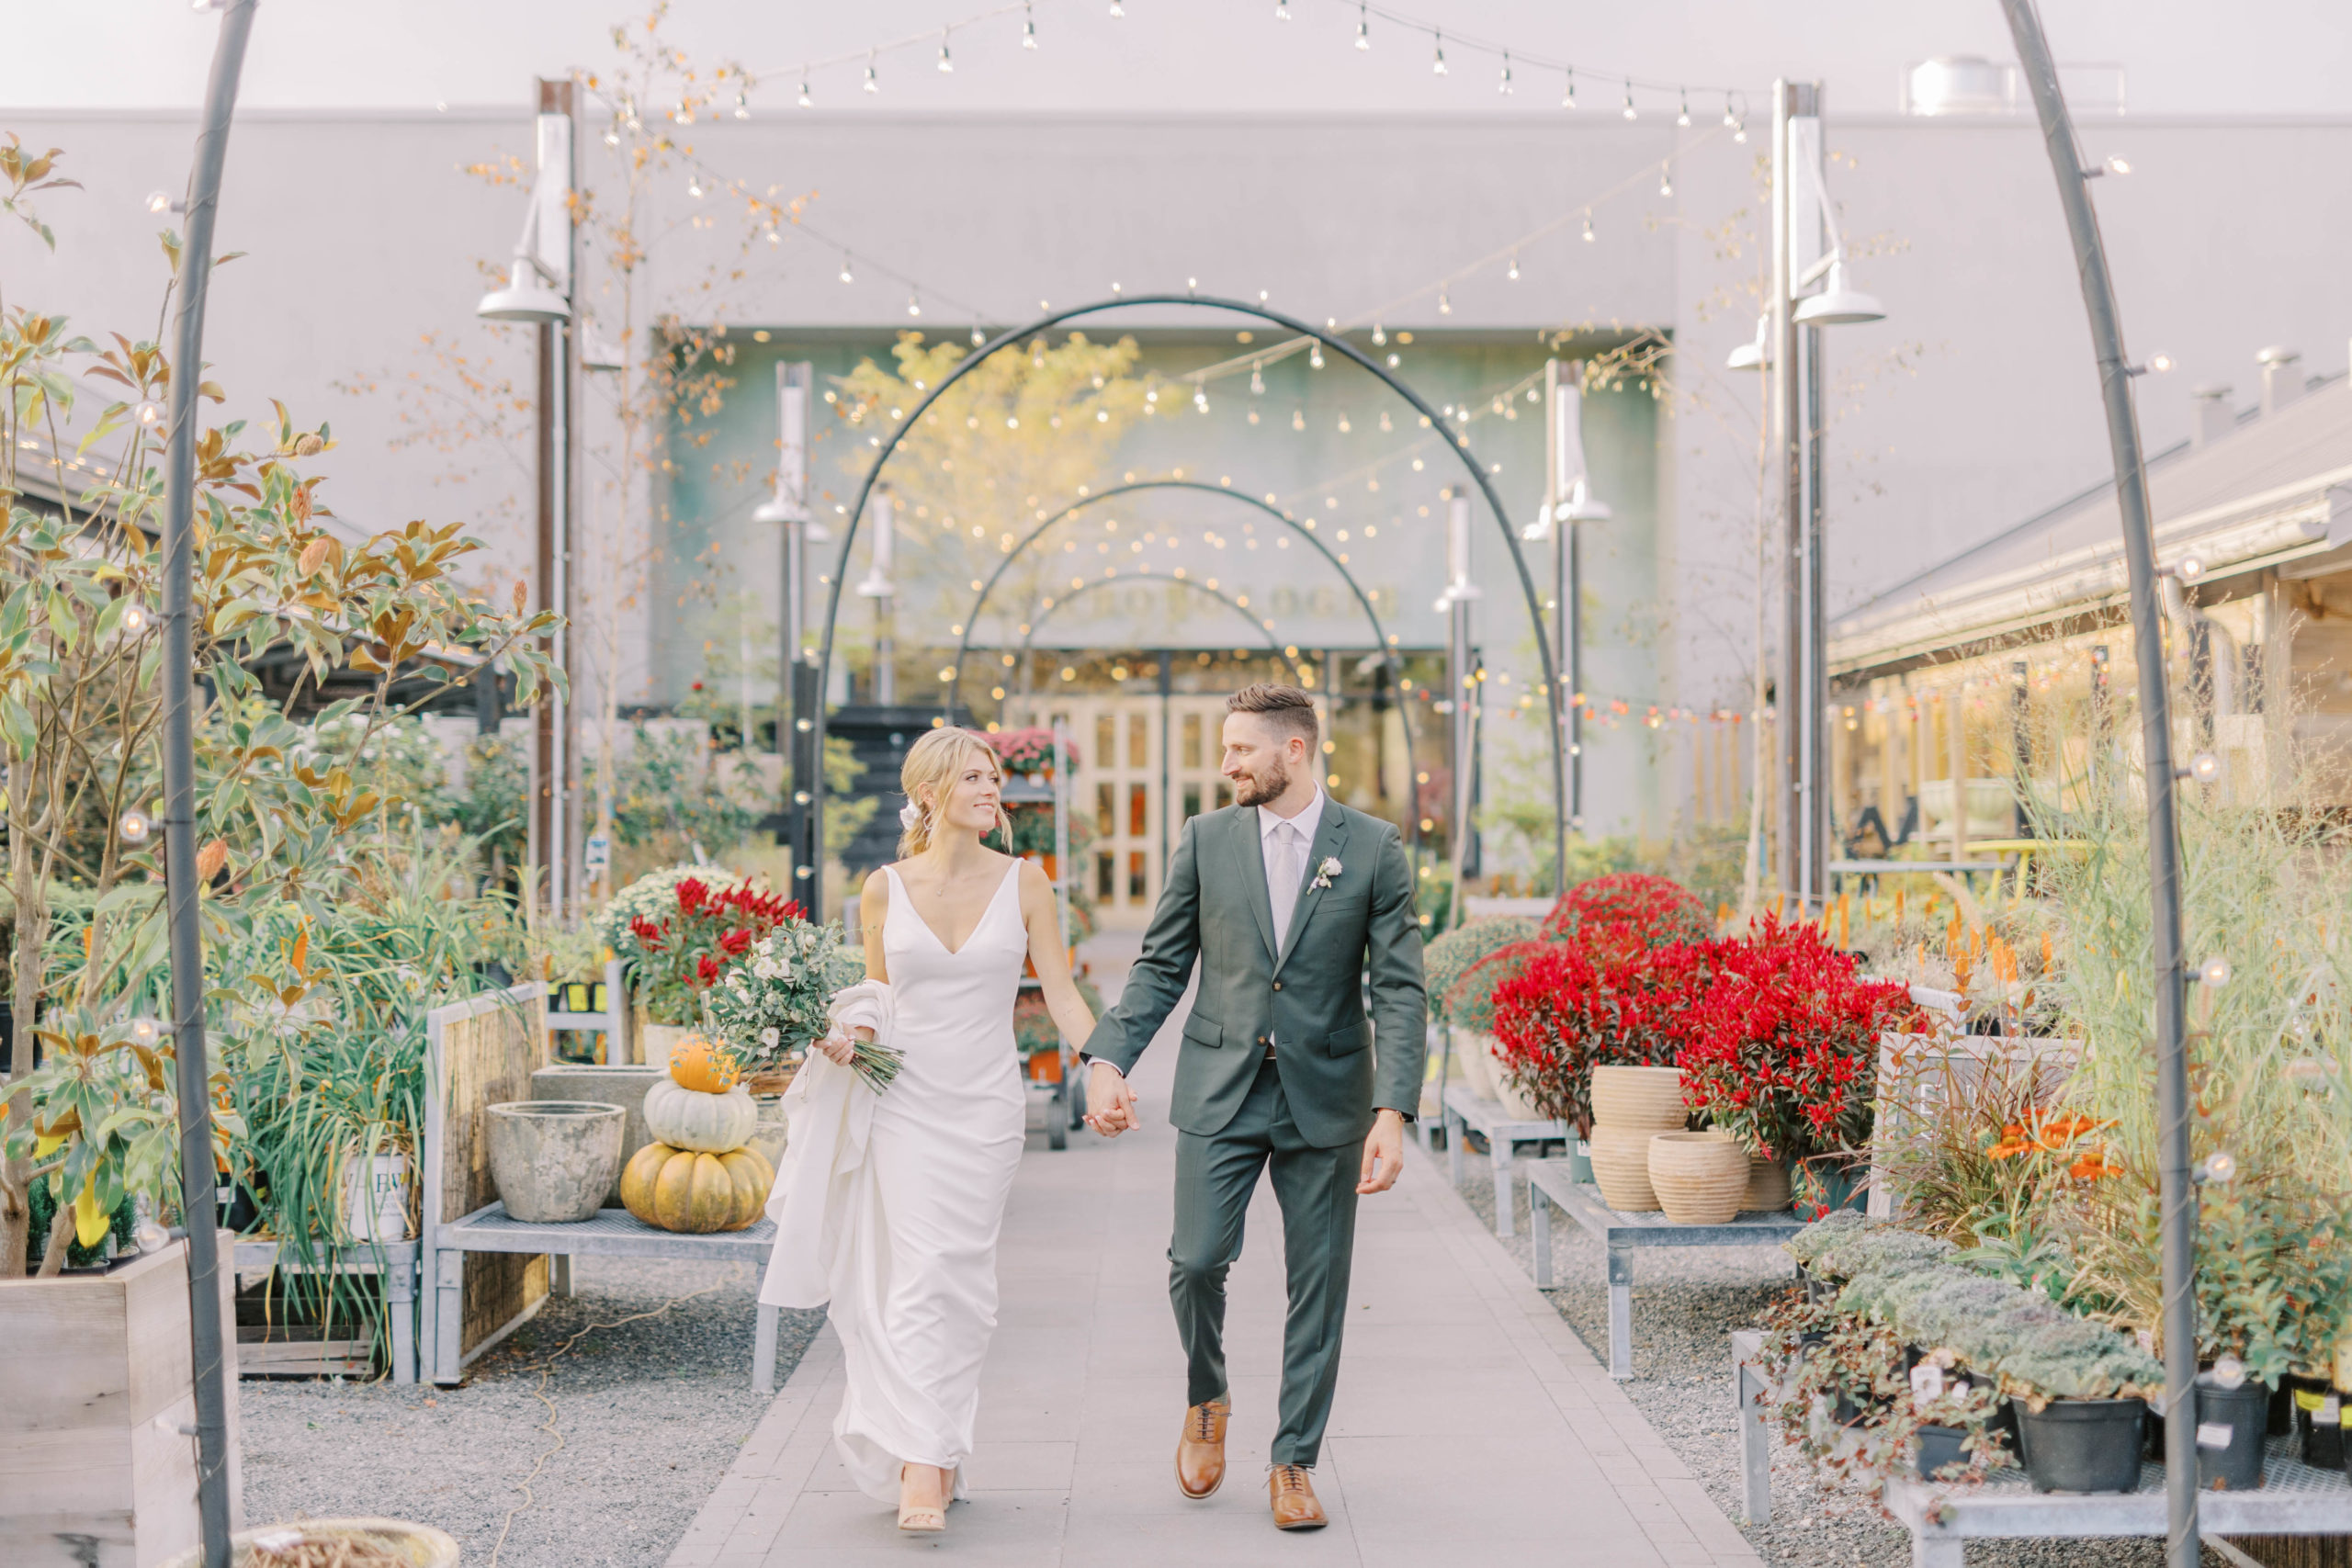 Terrain Gardens Fall Wedding | Pennsylvania Wedding Photographer